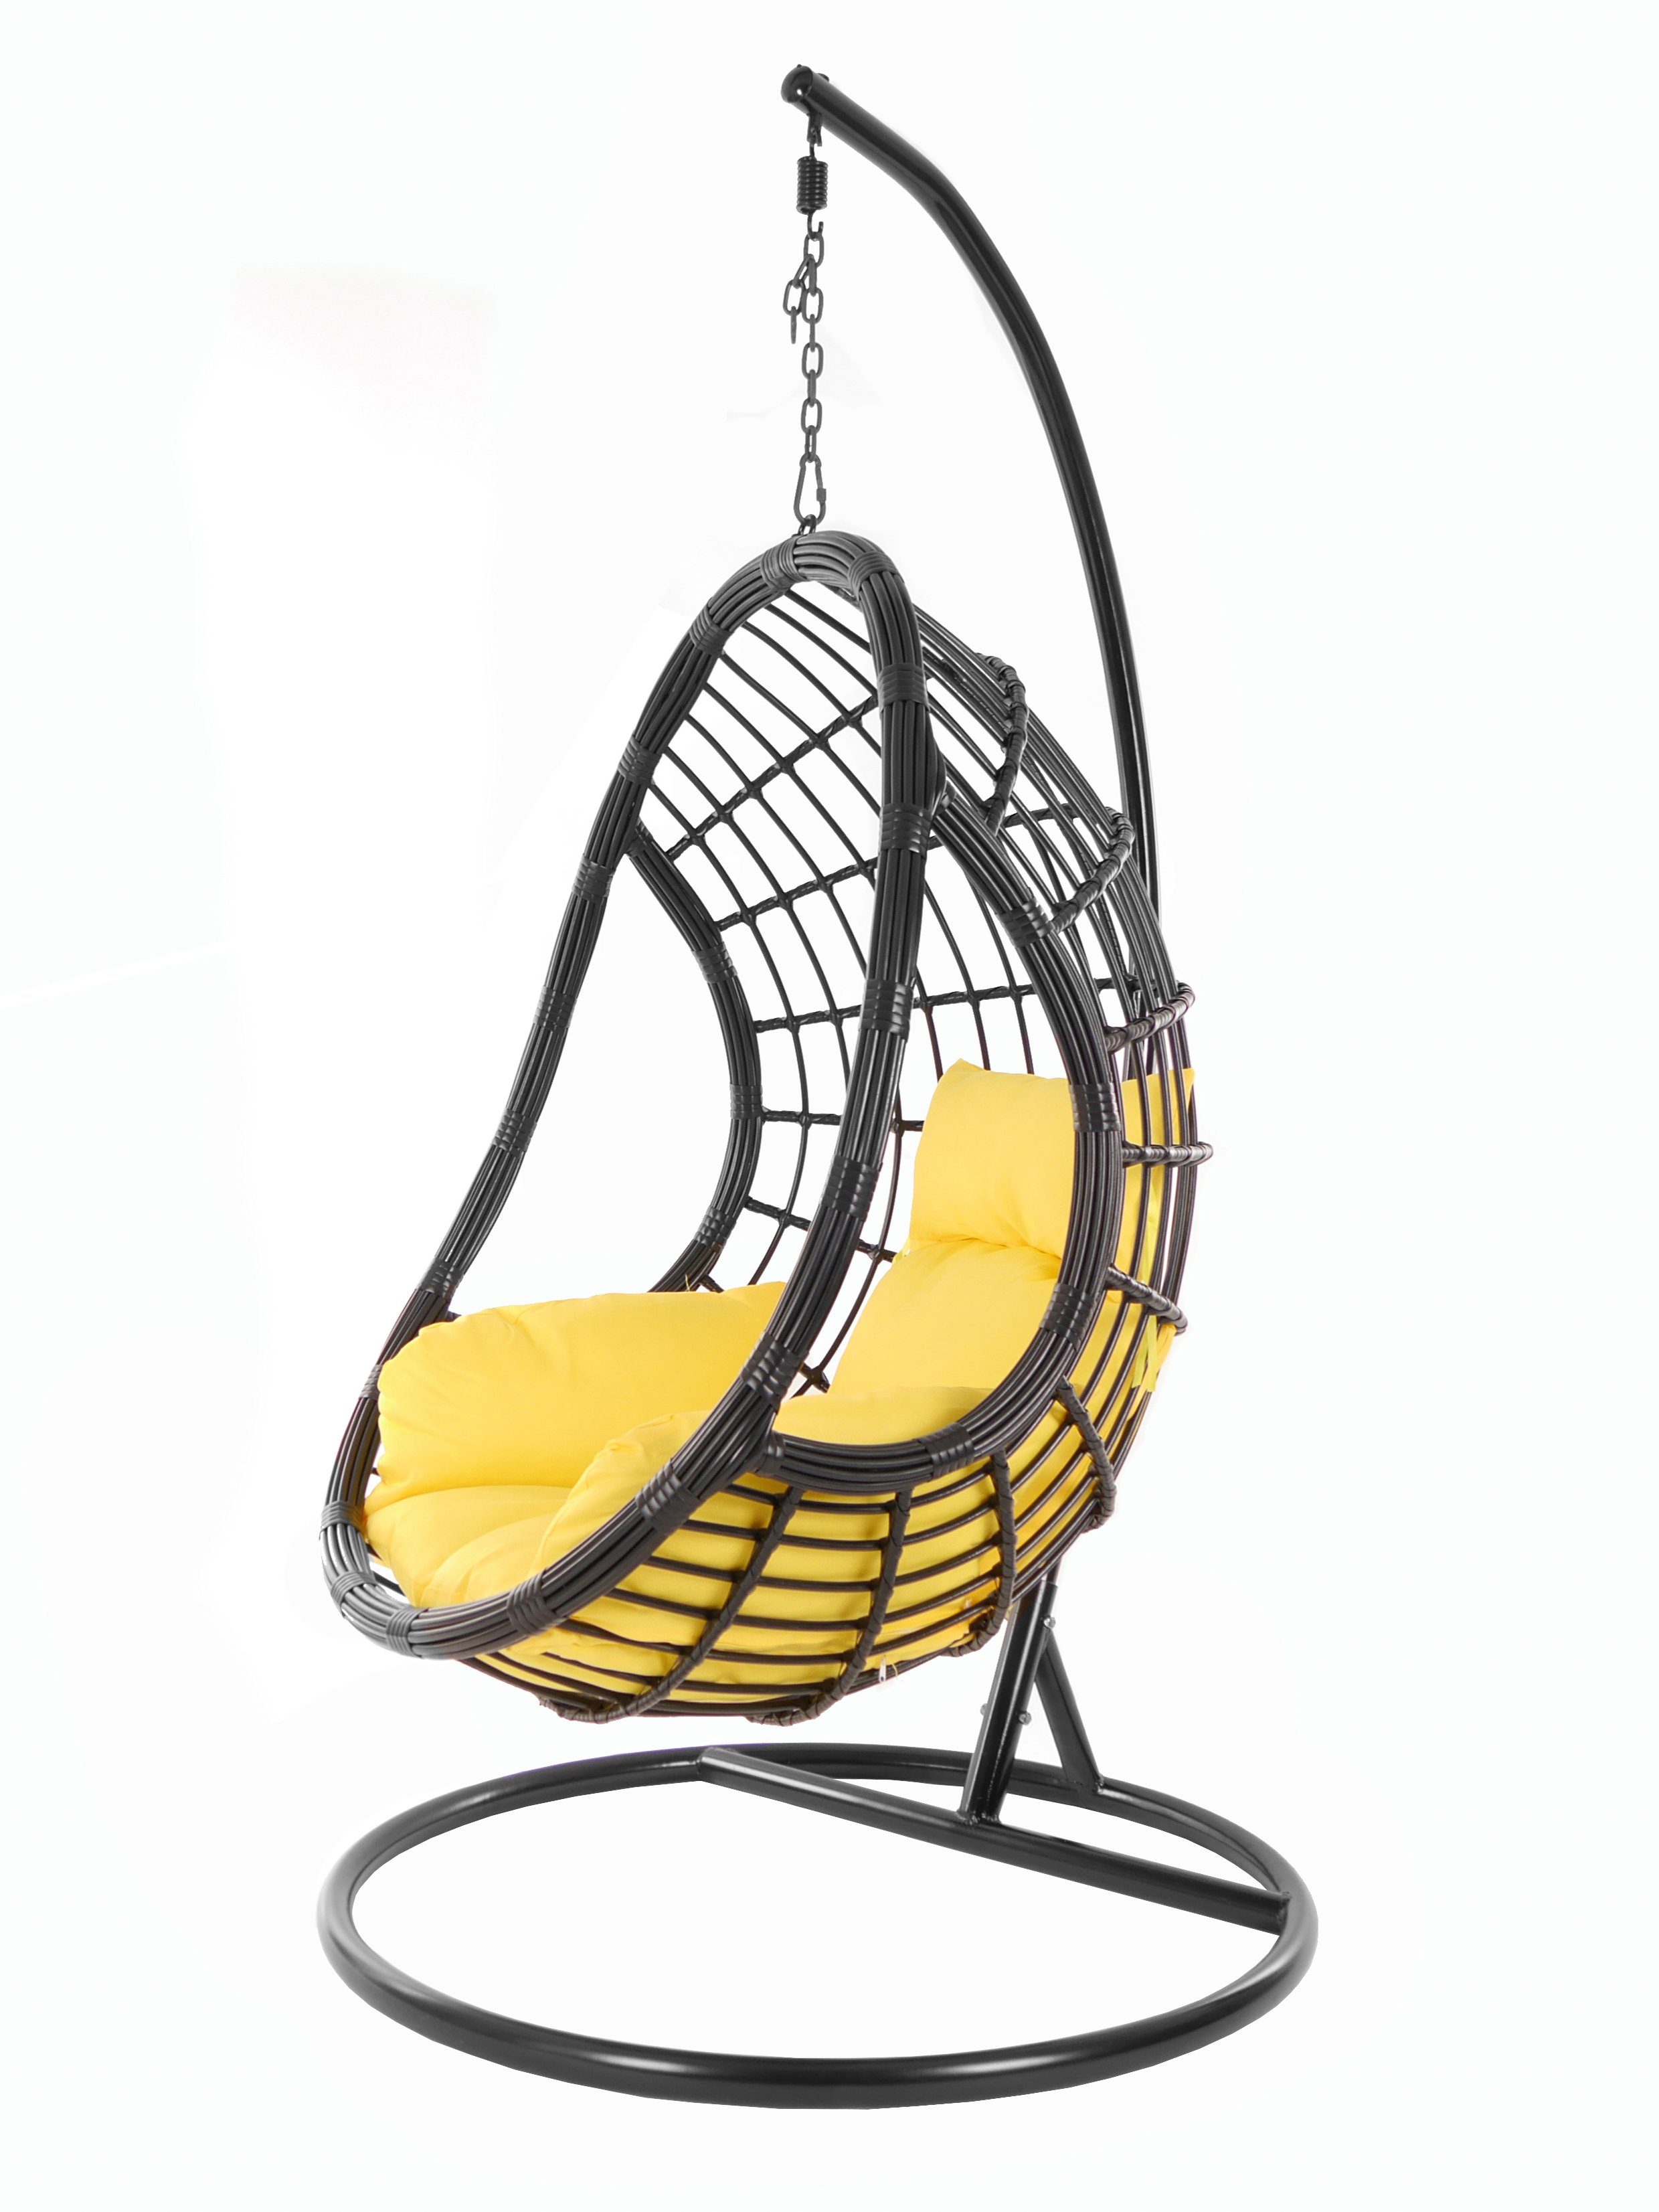 KIDEO Hängesessel PALMANOVA black, Schwebesessel, Swing Chair, Hängesessel mit Gestell und Kissen, Nest-Kissen gelb (2200 pineapple)